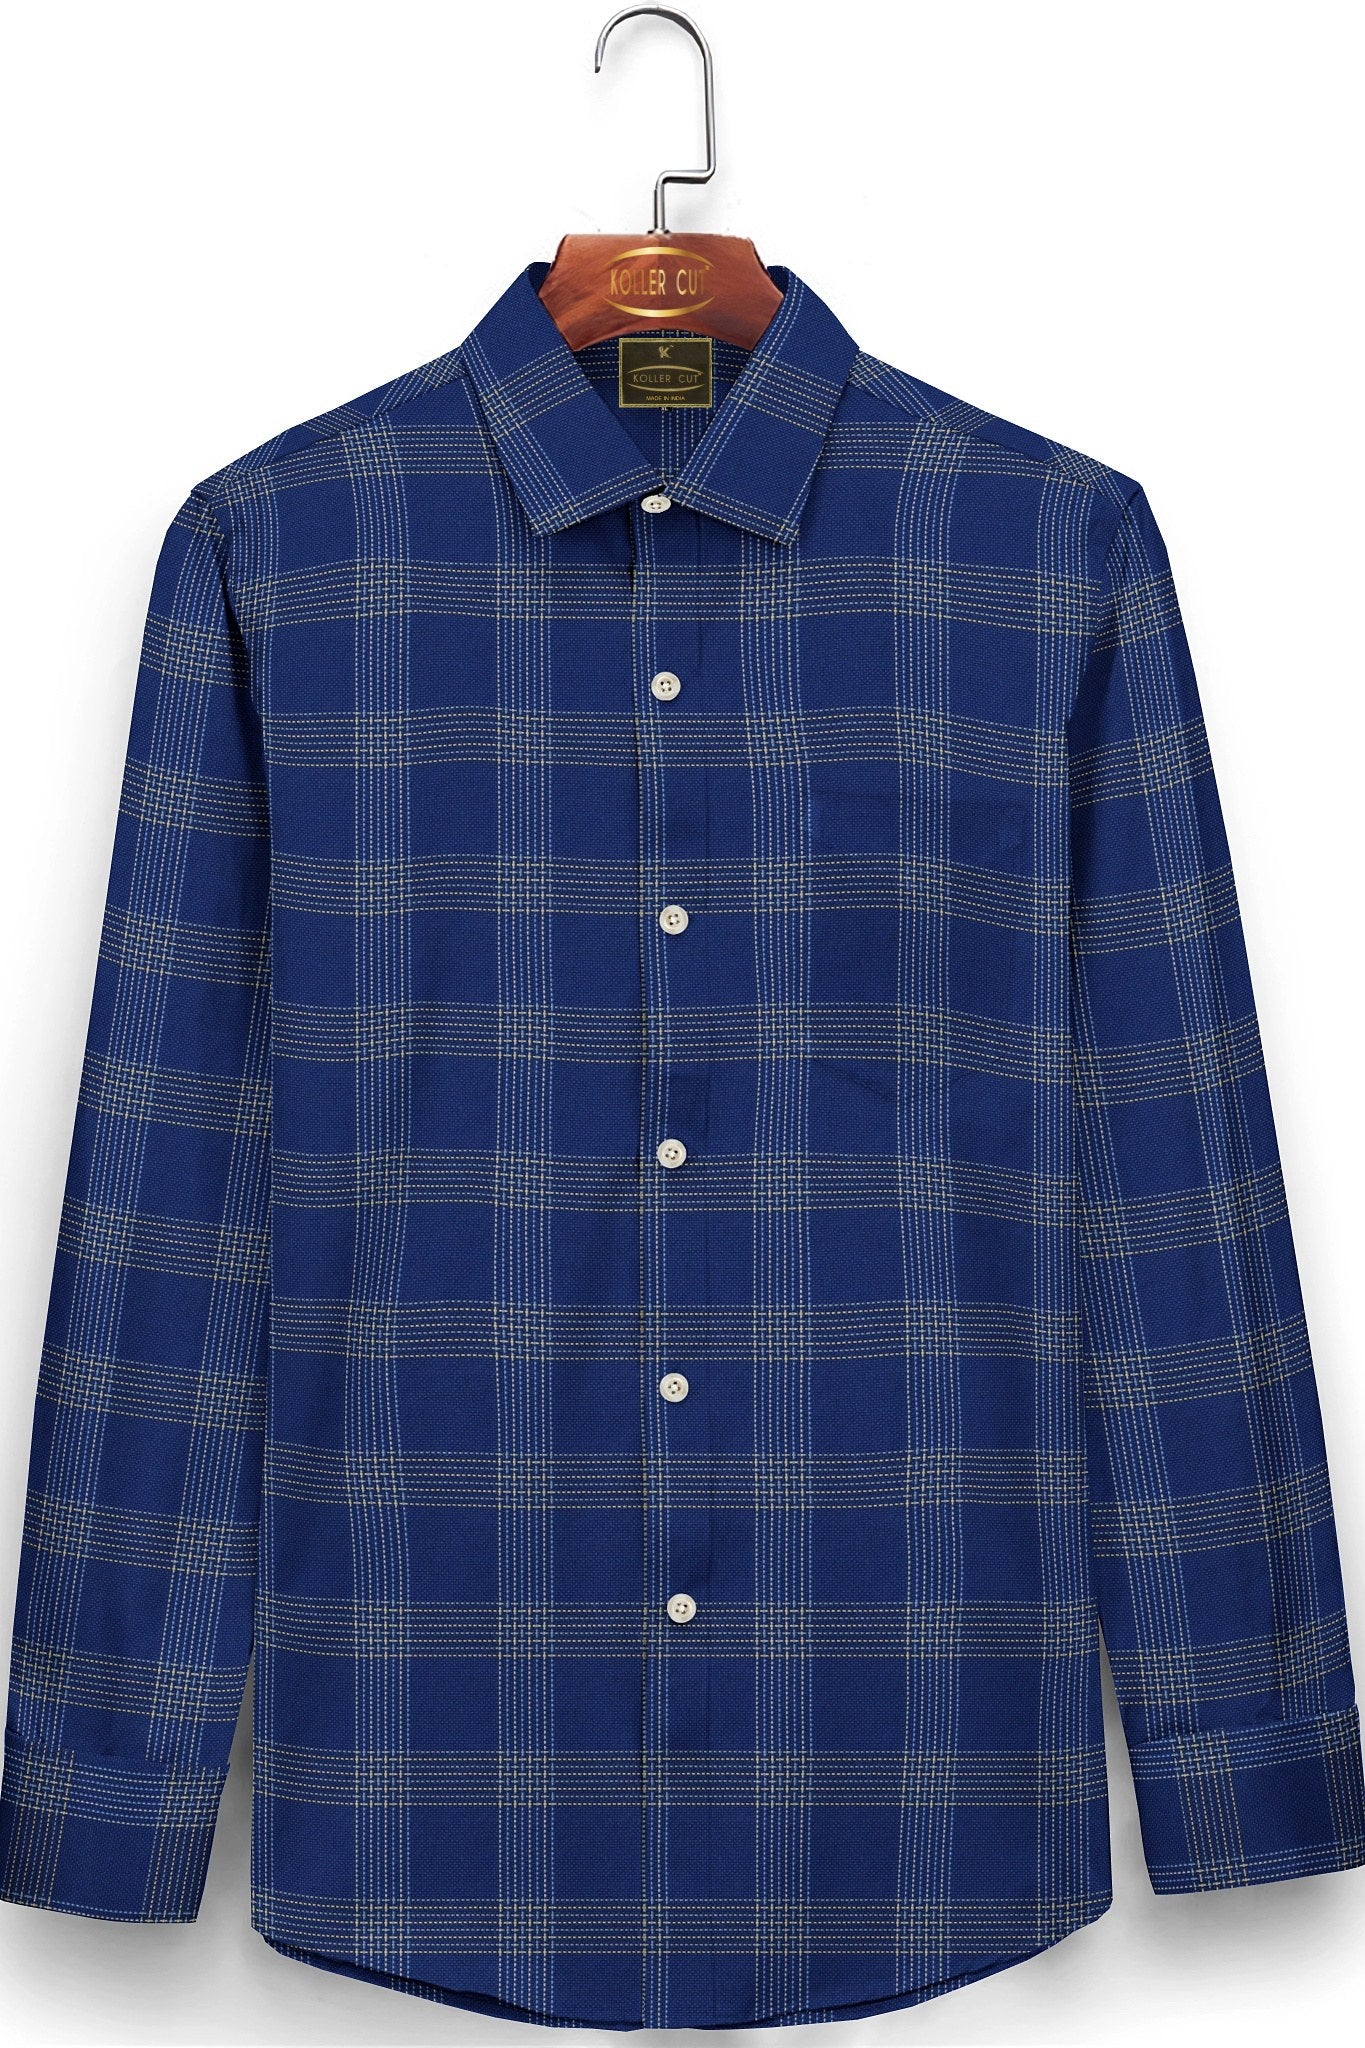 Delft Blue with Glaucous Blue and Beige Checks Premium Cotton Shirt